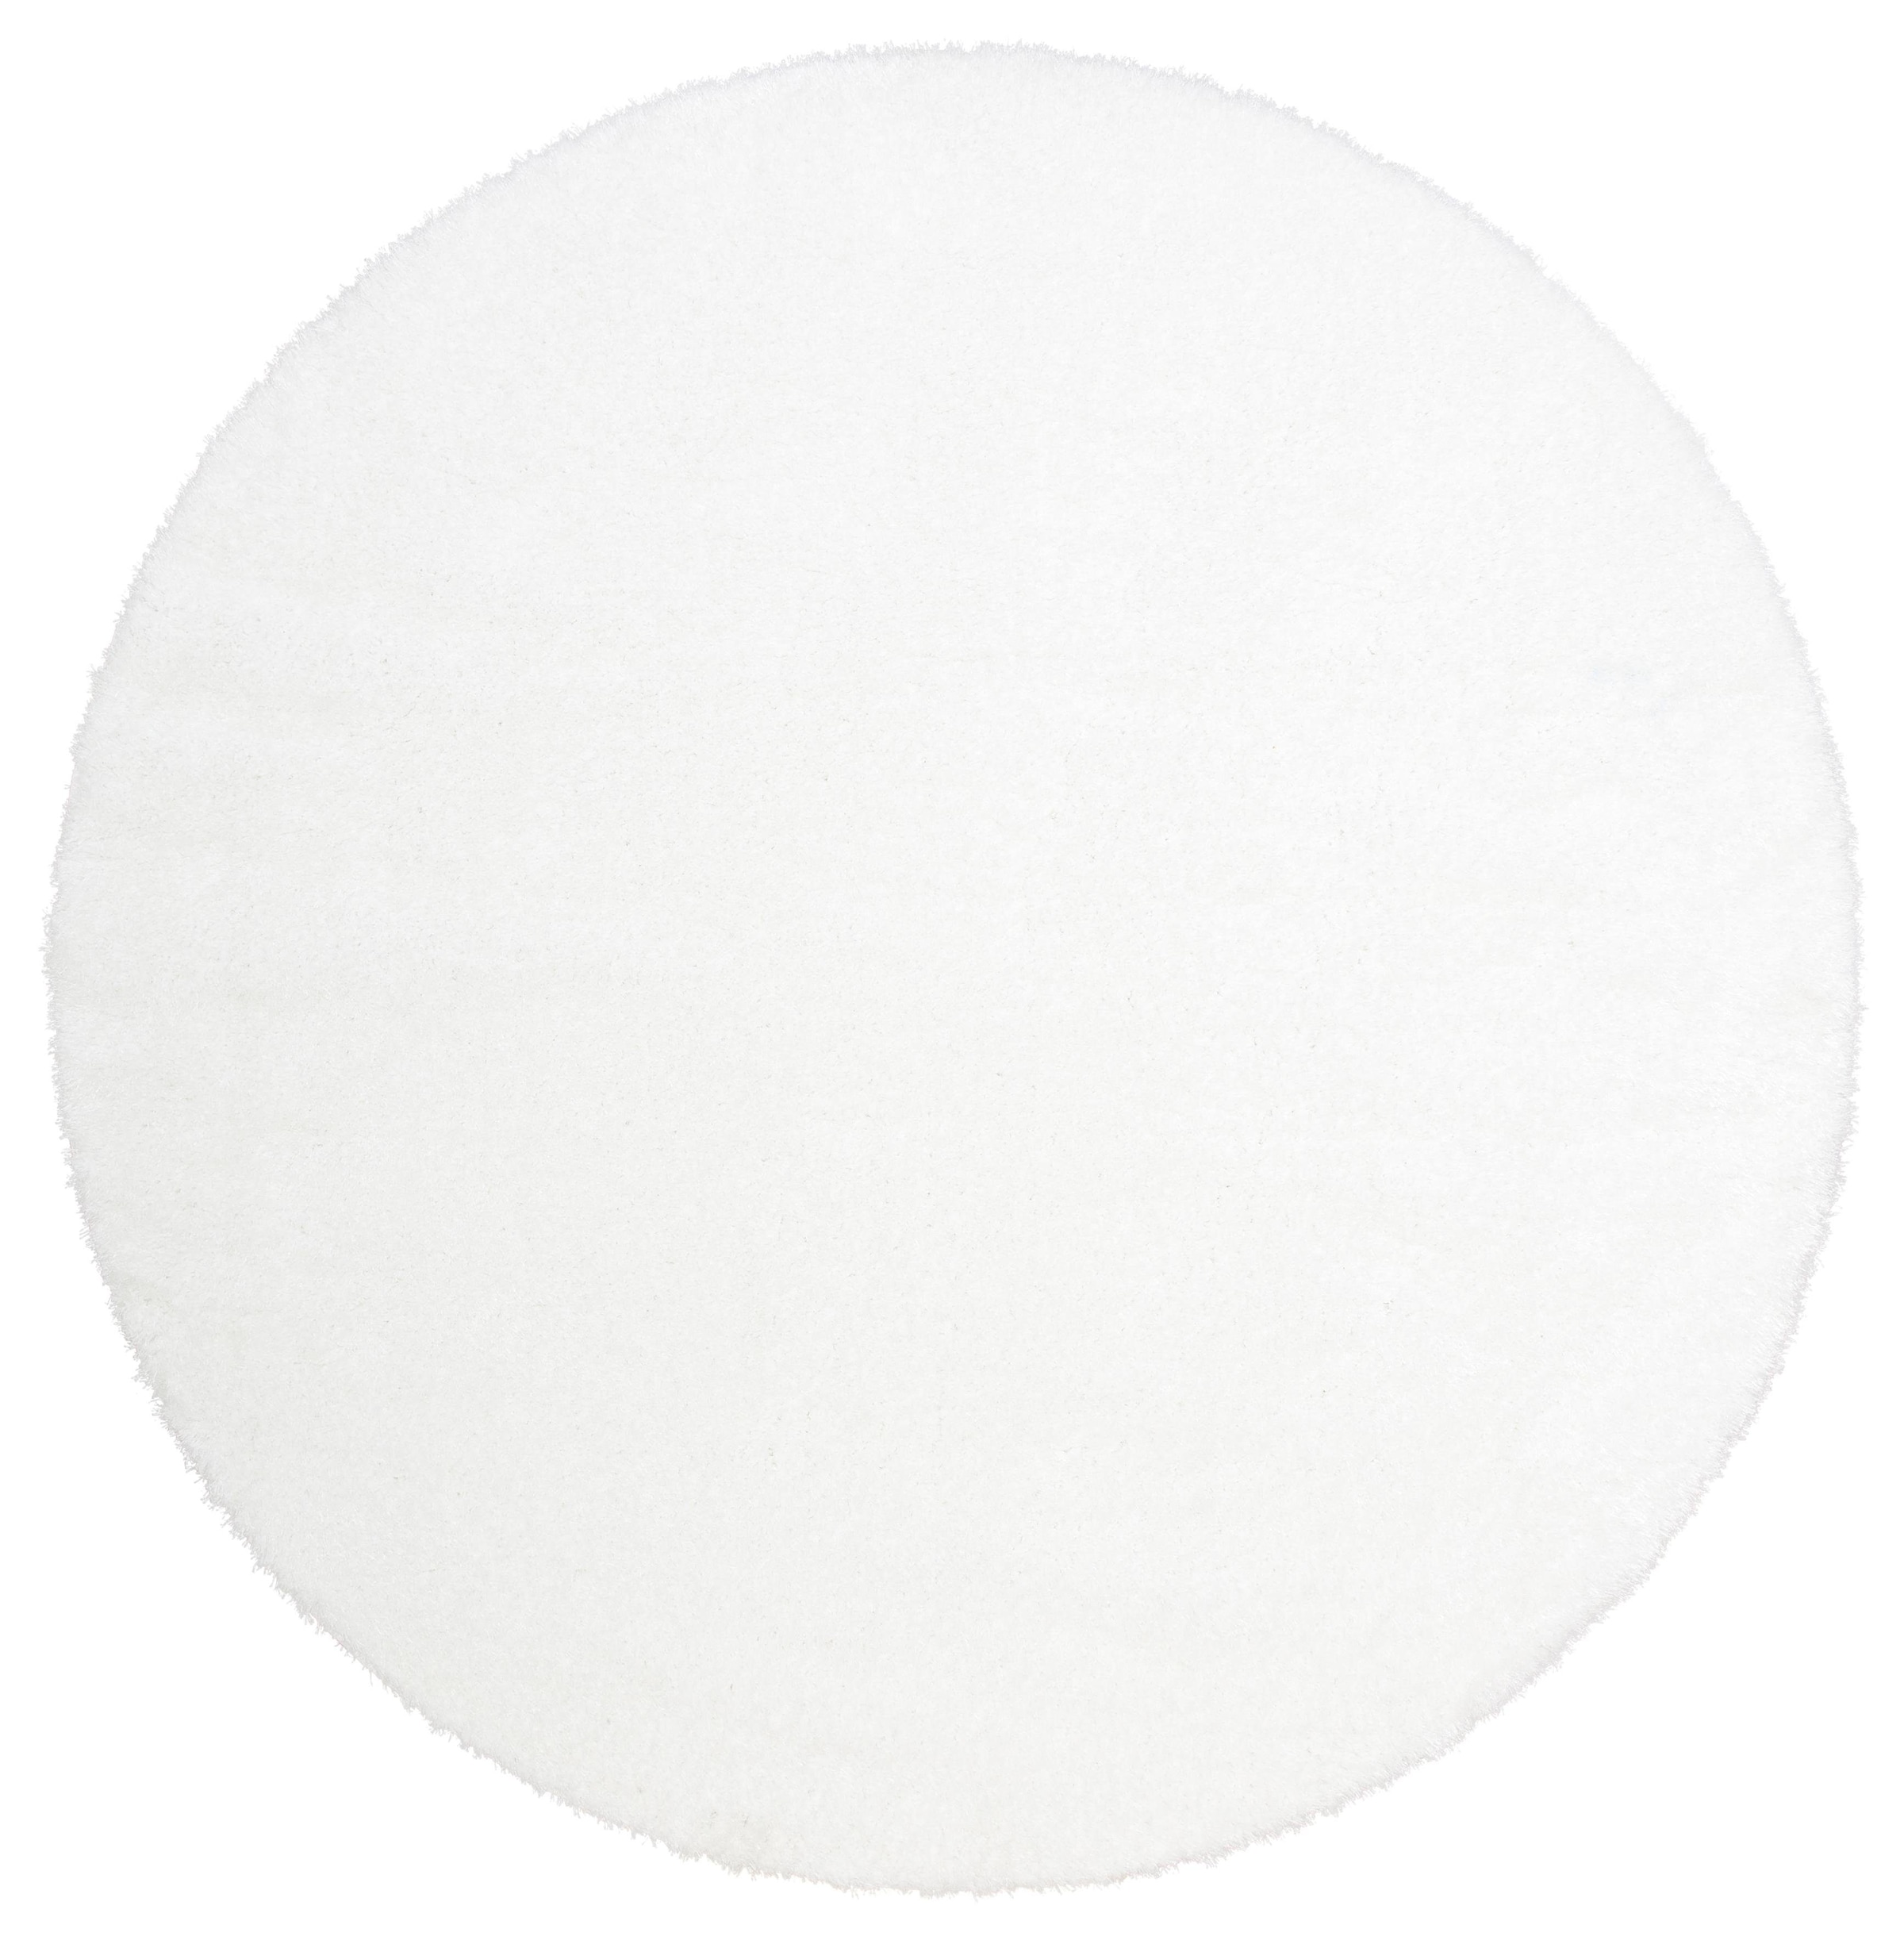 Hochflor-Teppich »Malin«, rund, Uni-Farben, leicht glänzend, besonders flauschig durch...